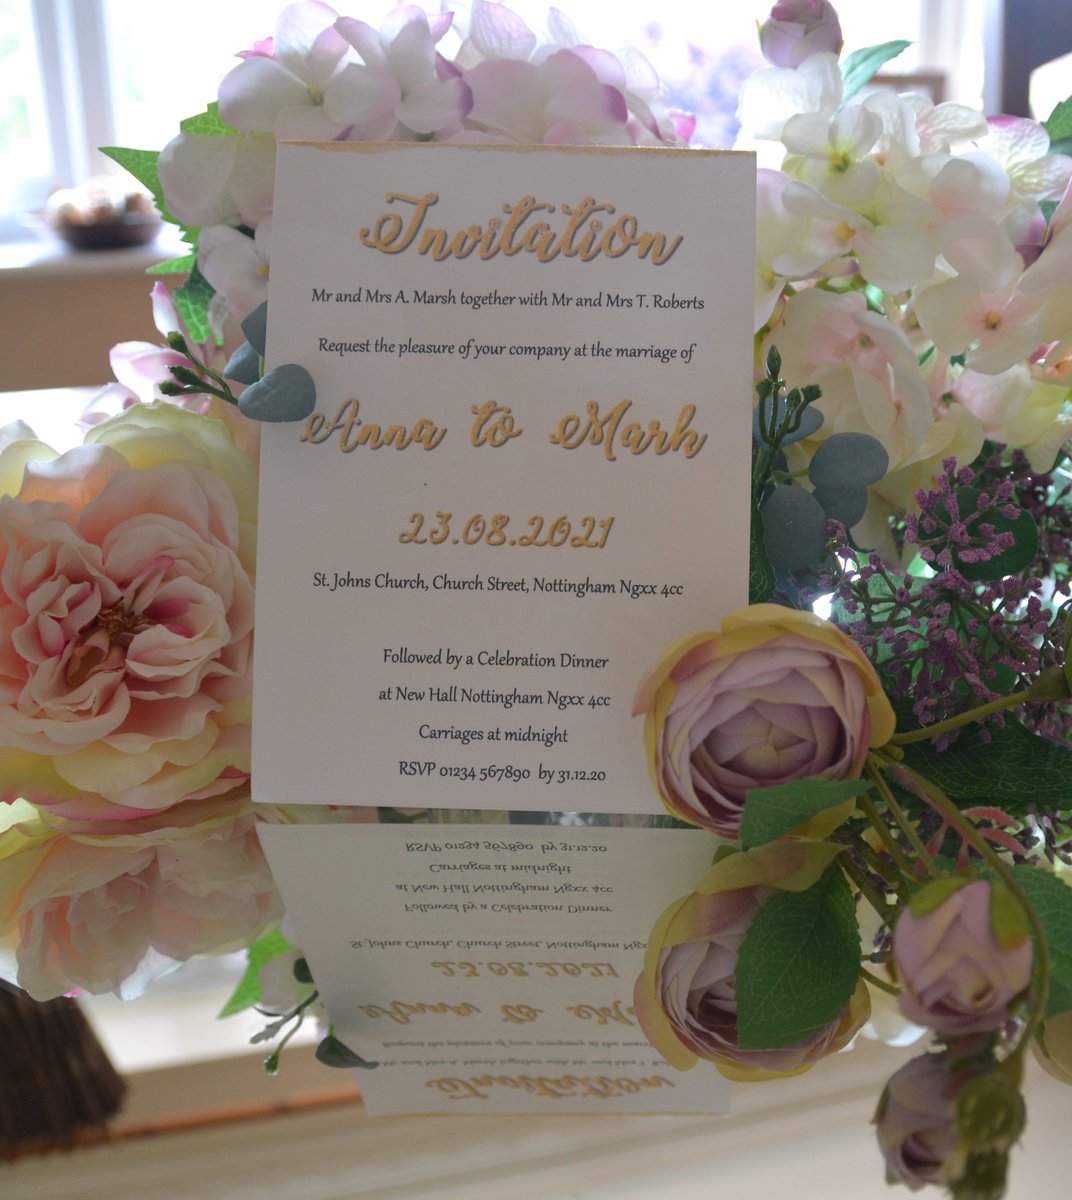 Have you sorted your #2020wedding invitations out?
.
2020bride #bridetobe #weddinginvitations #personalised #weddingplanning #derbyshirewedding #londonislovinit #nottinghamwedding